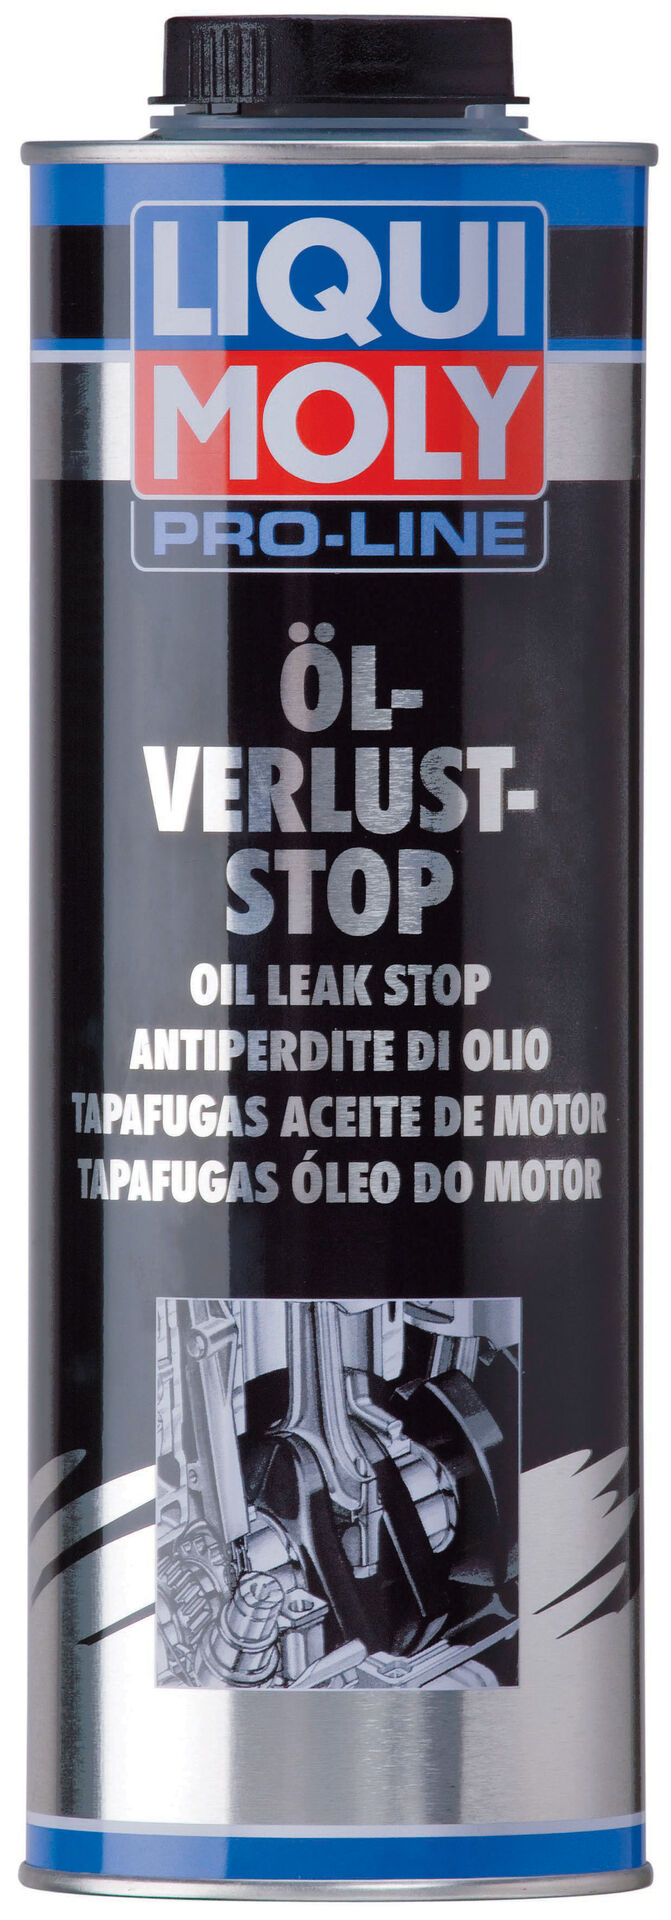  LIQUI MOLY 5182 Pro Line Öl Verlust Stop Dose Blech 1 l